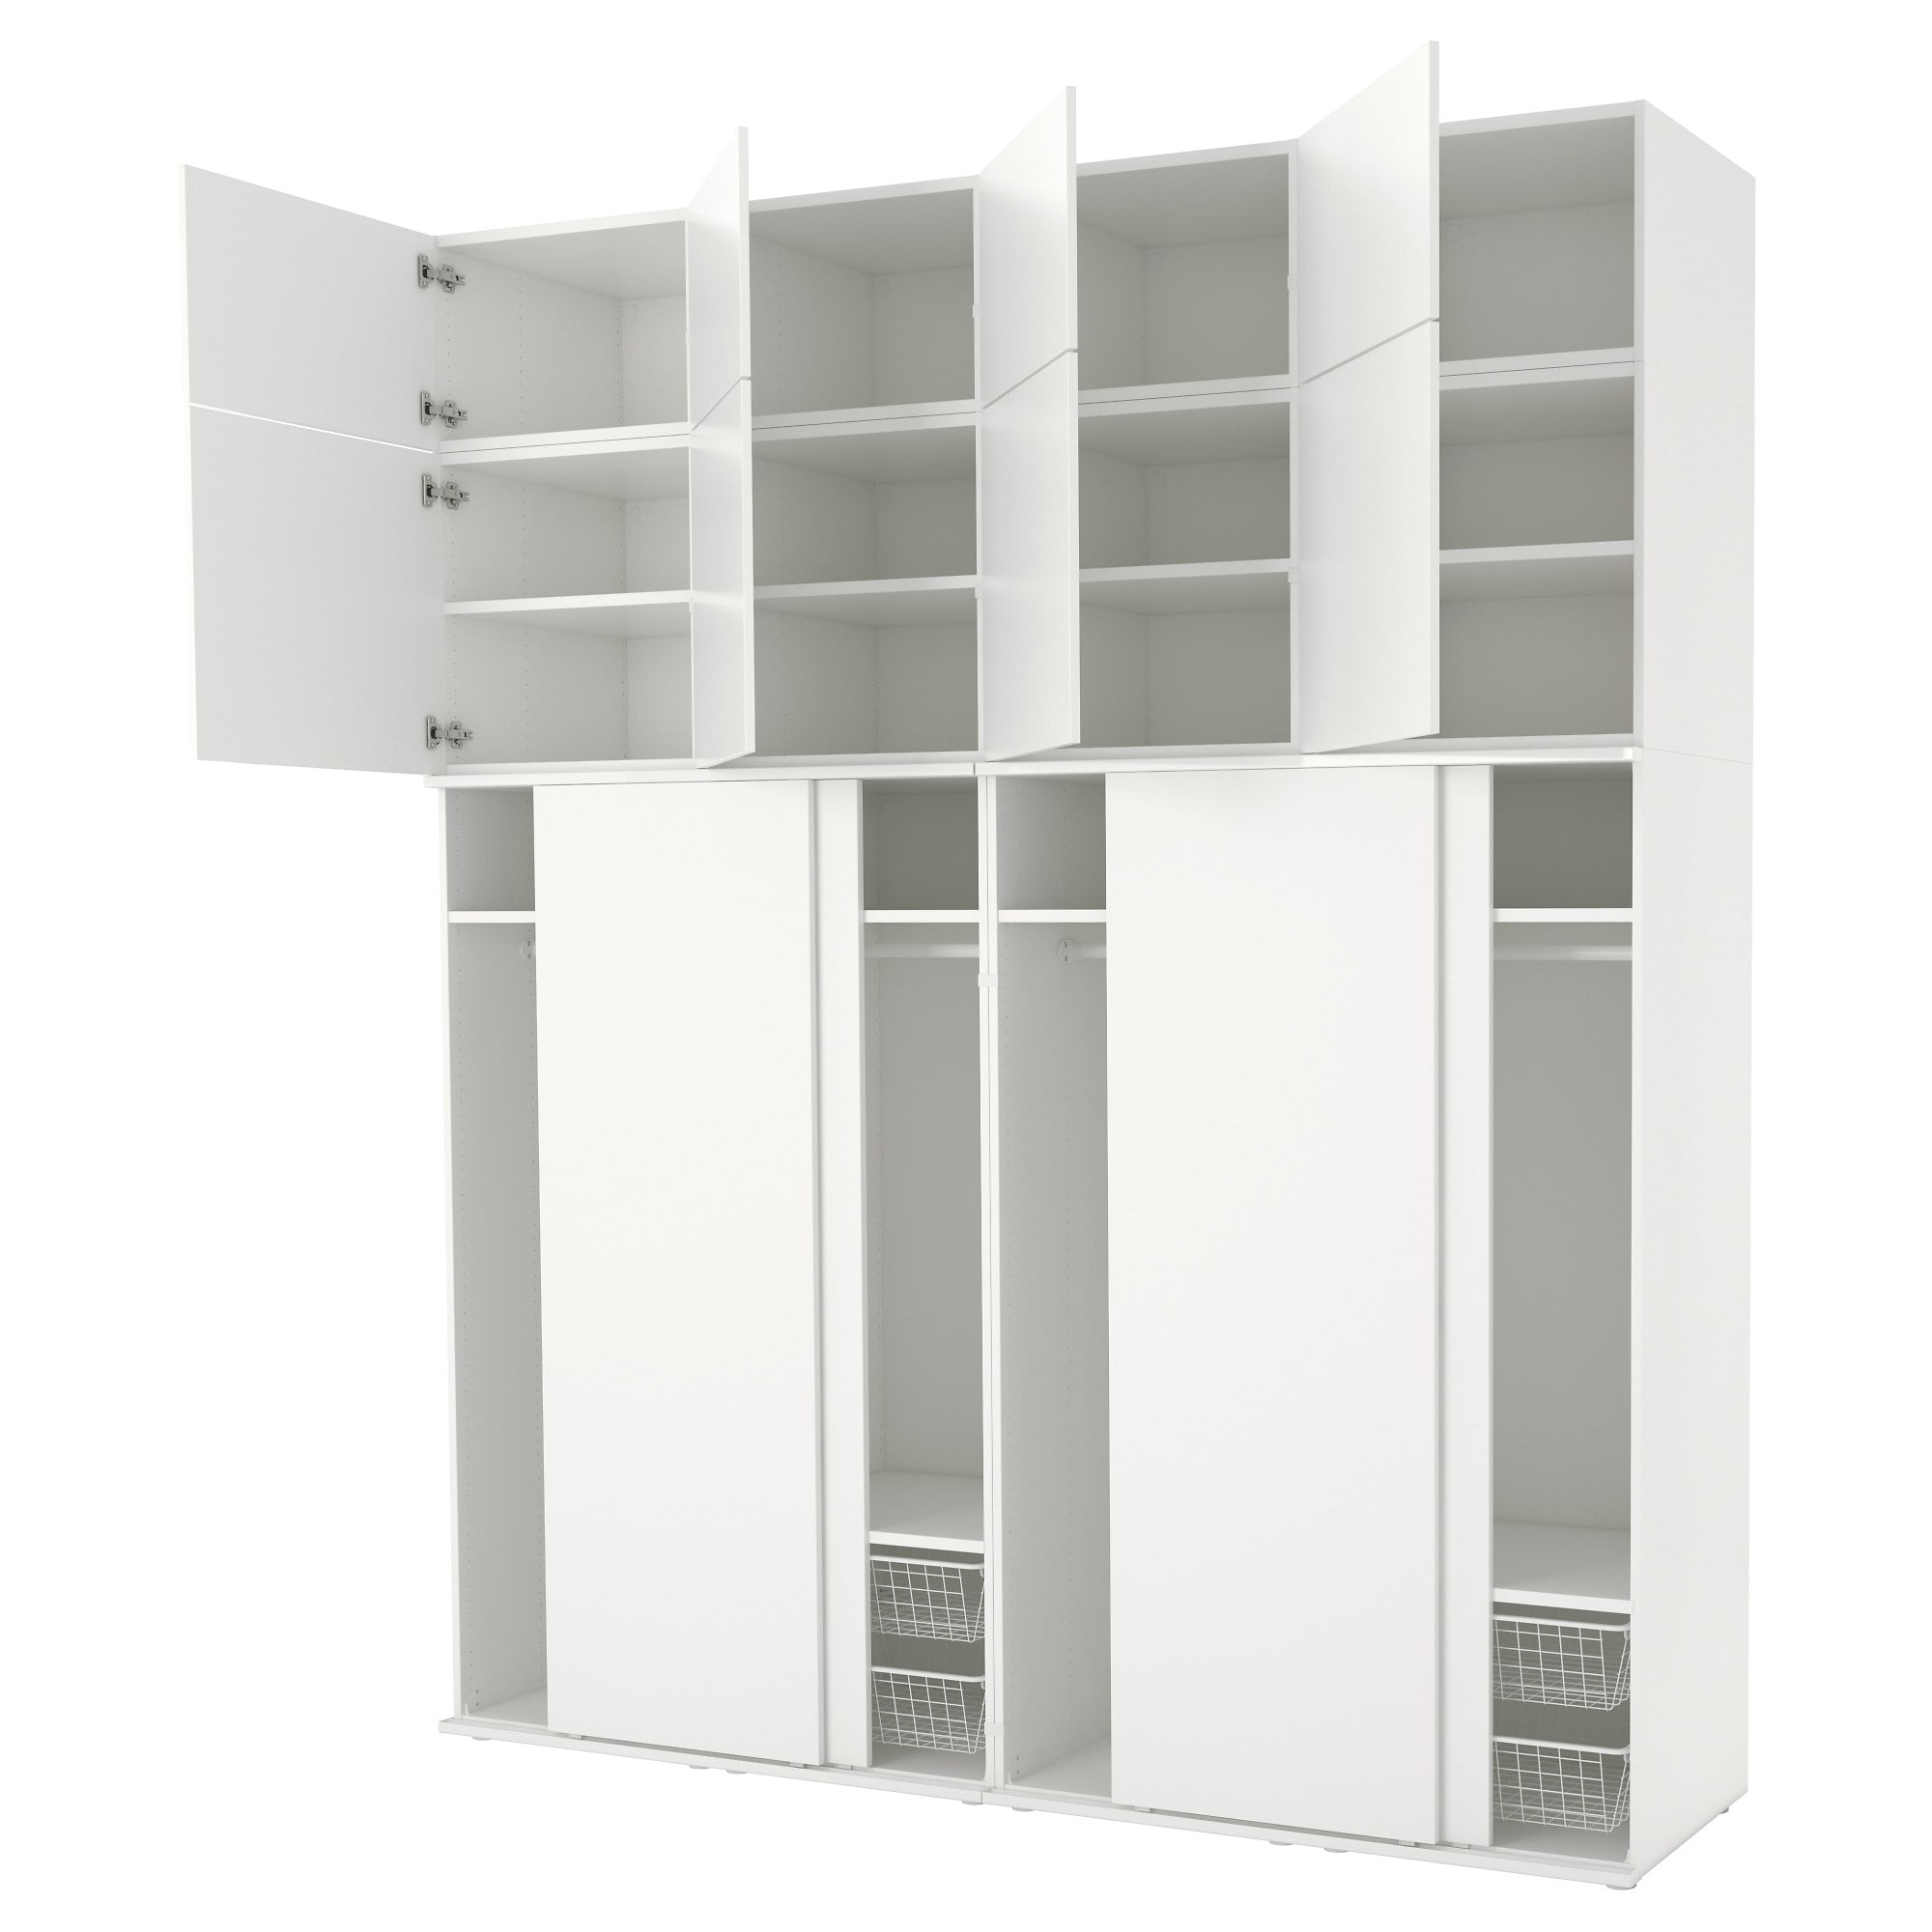 ᐅ Ikea Platsa System ᐅ Alle Möglichkeiten und Konfigurationen